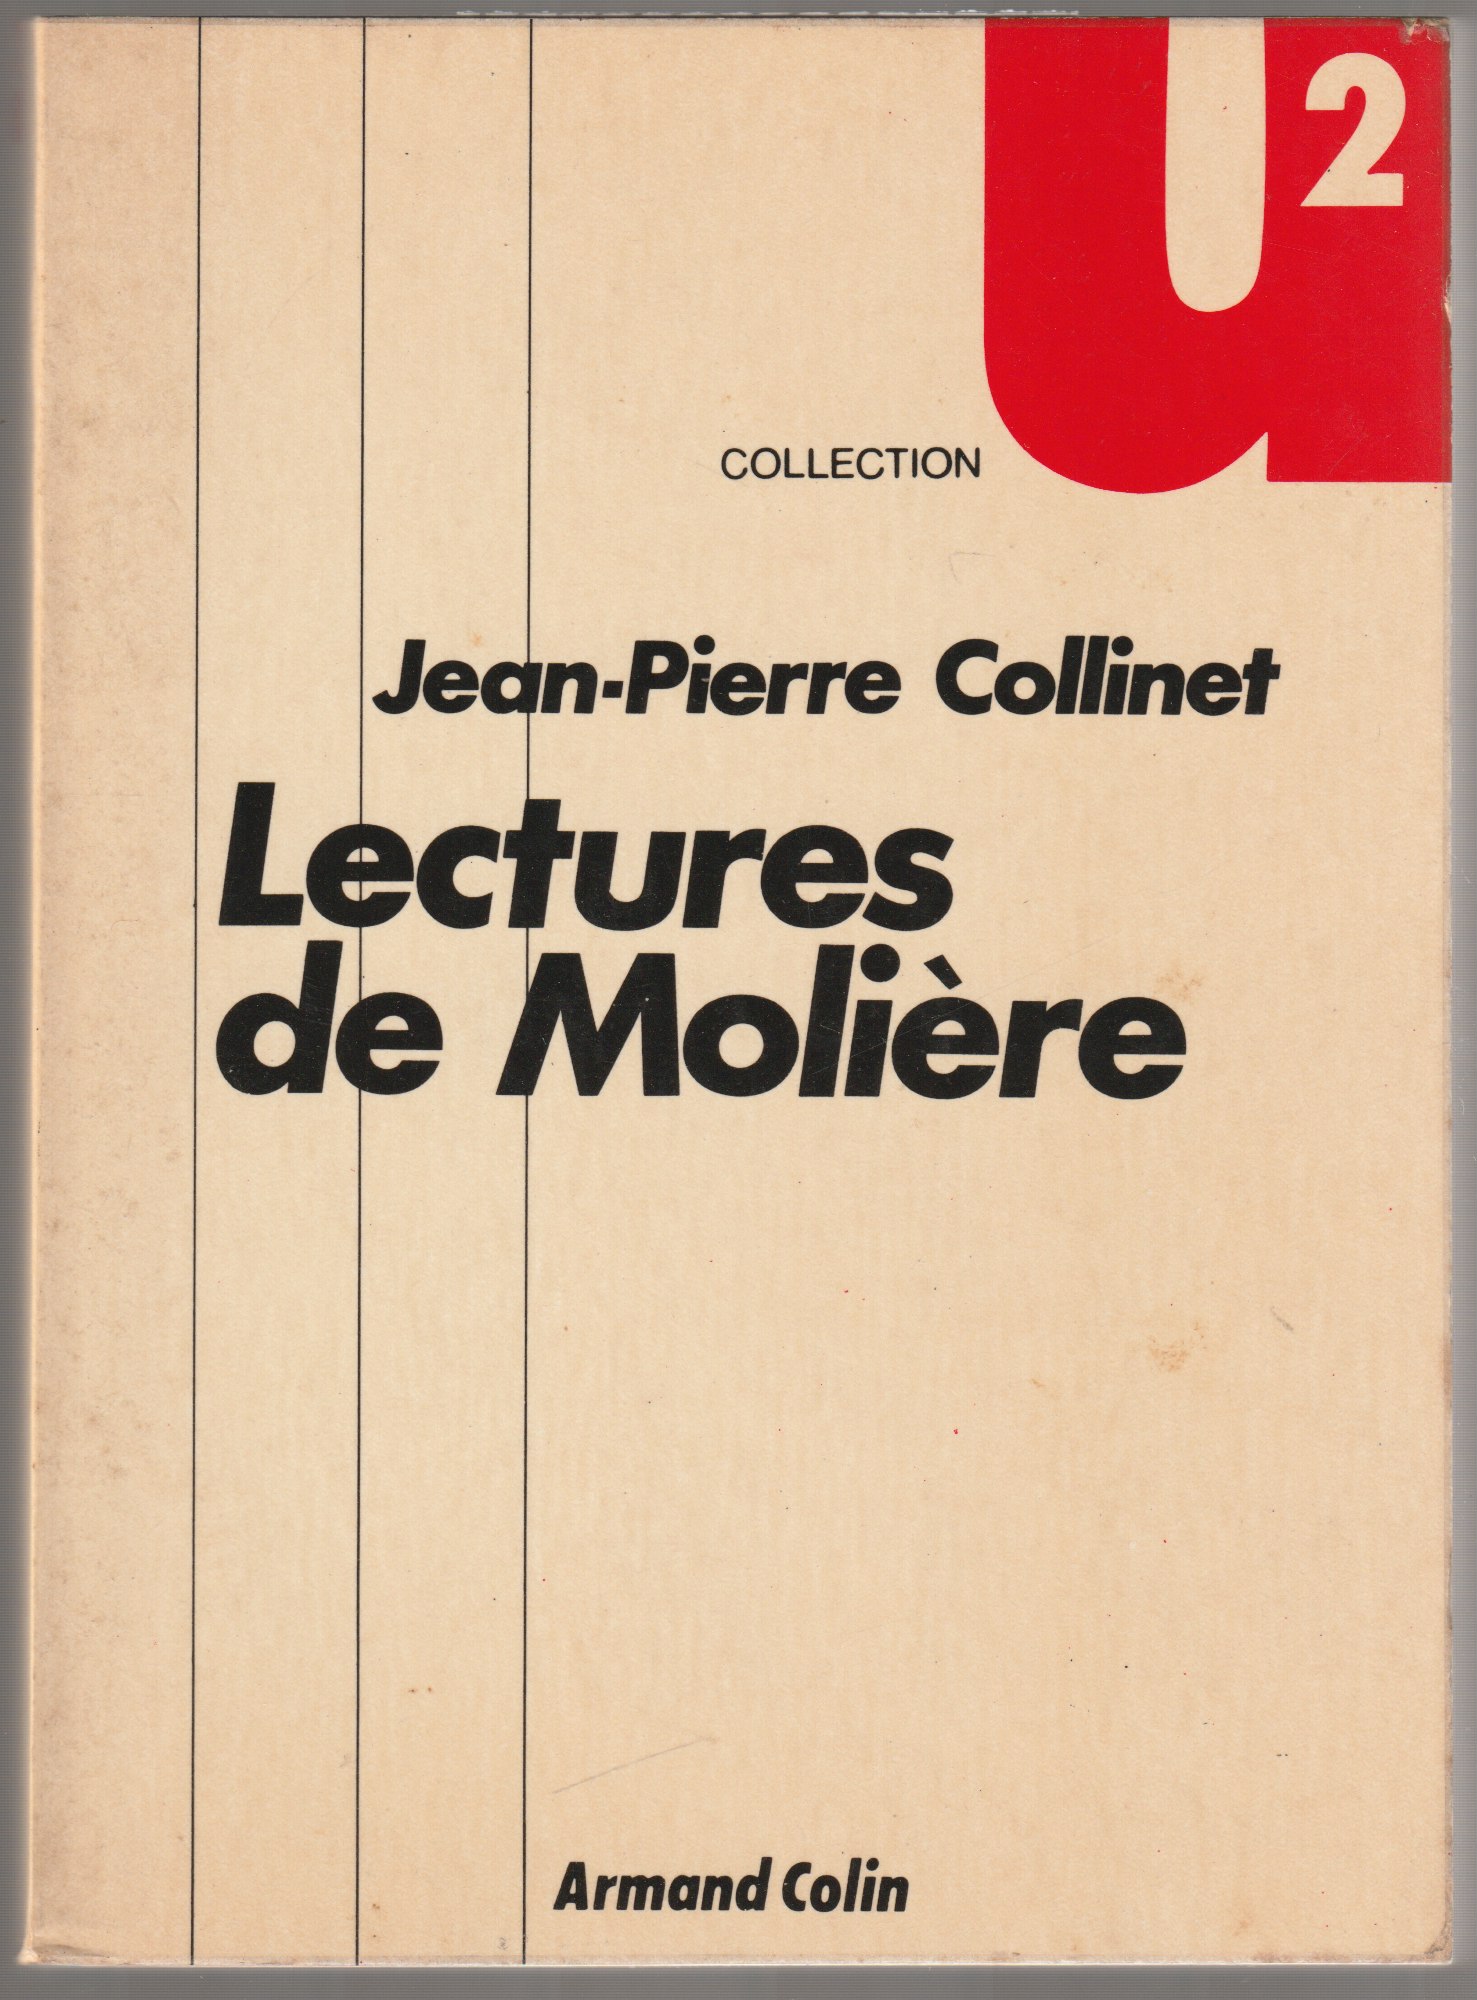 Lectures de Moliere.